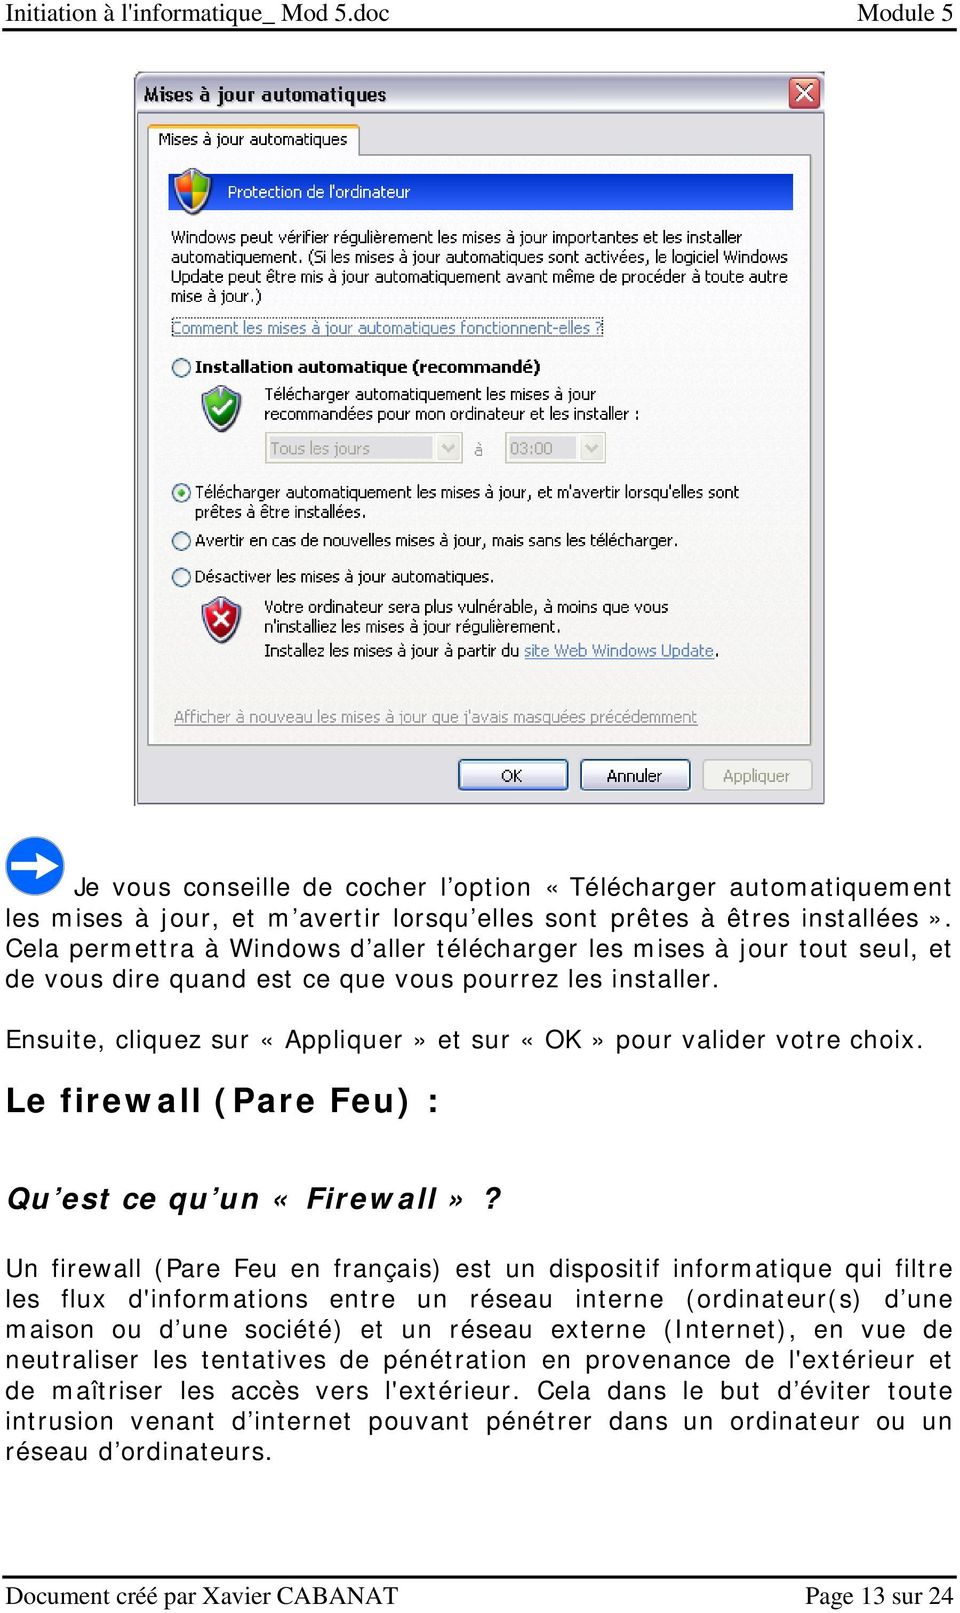 Ensuite, cliquez sur «Appliquer» et sur «OK» pour valider votre choix. Le firewall (Pare Feu) : Qu est ce qu un «Firewall»?